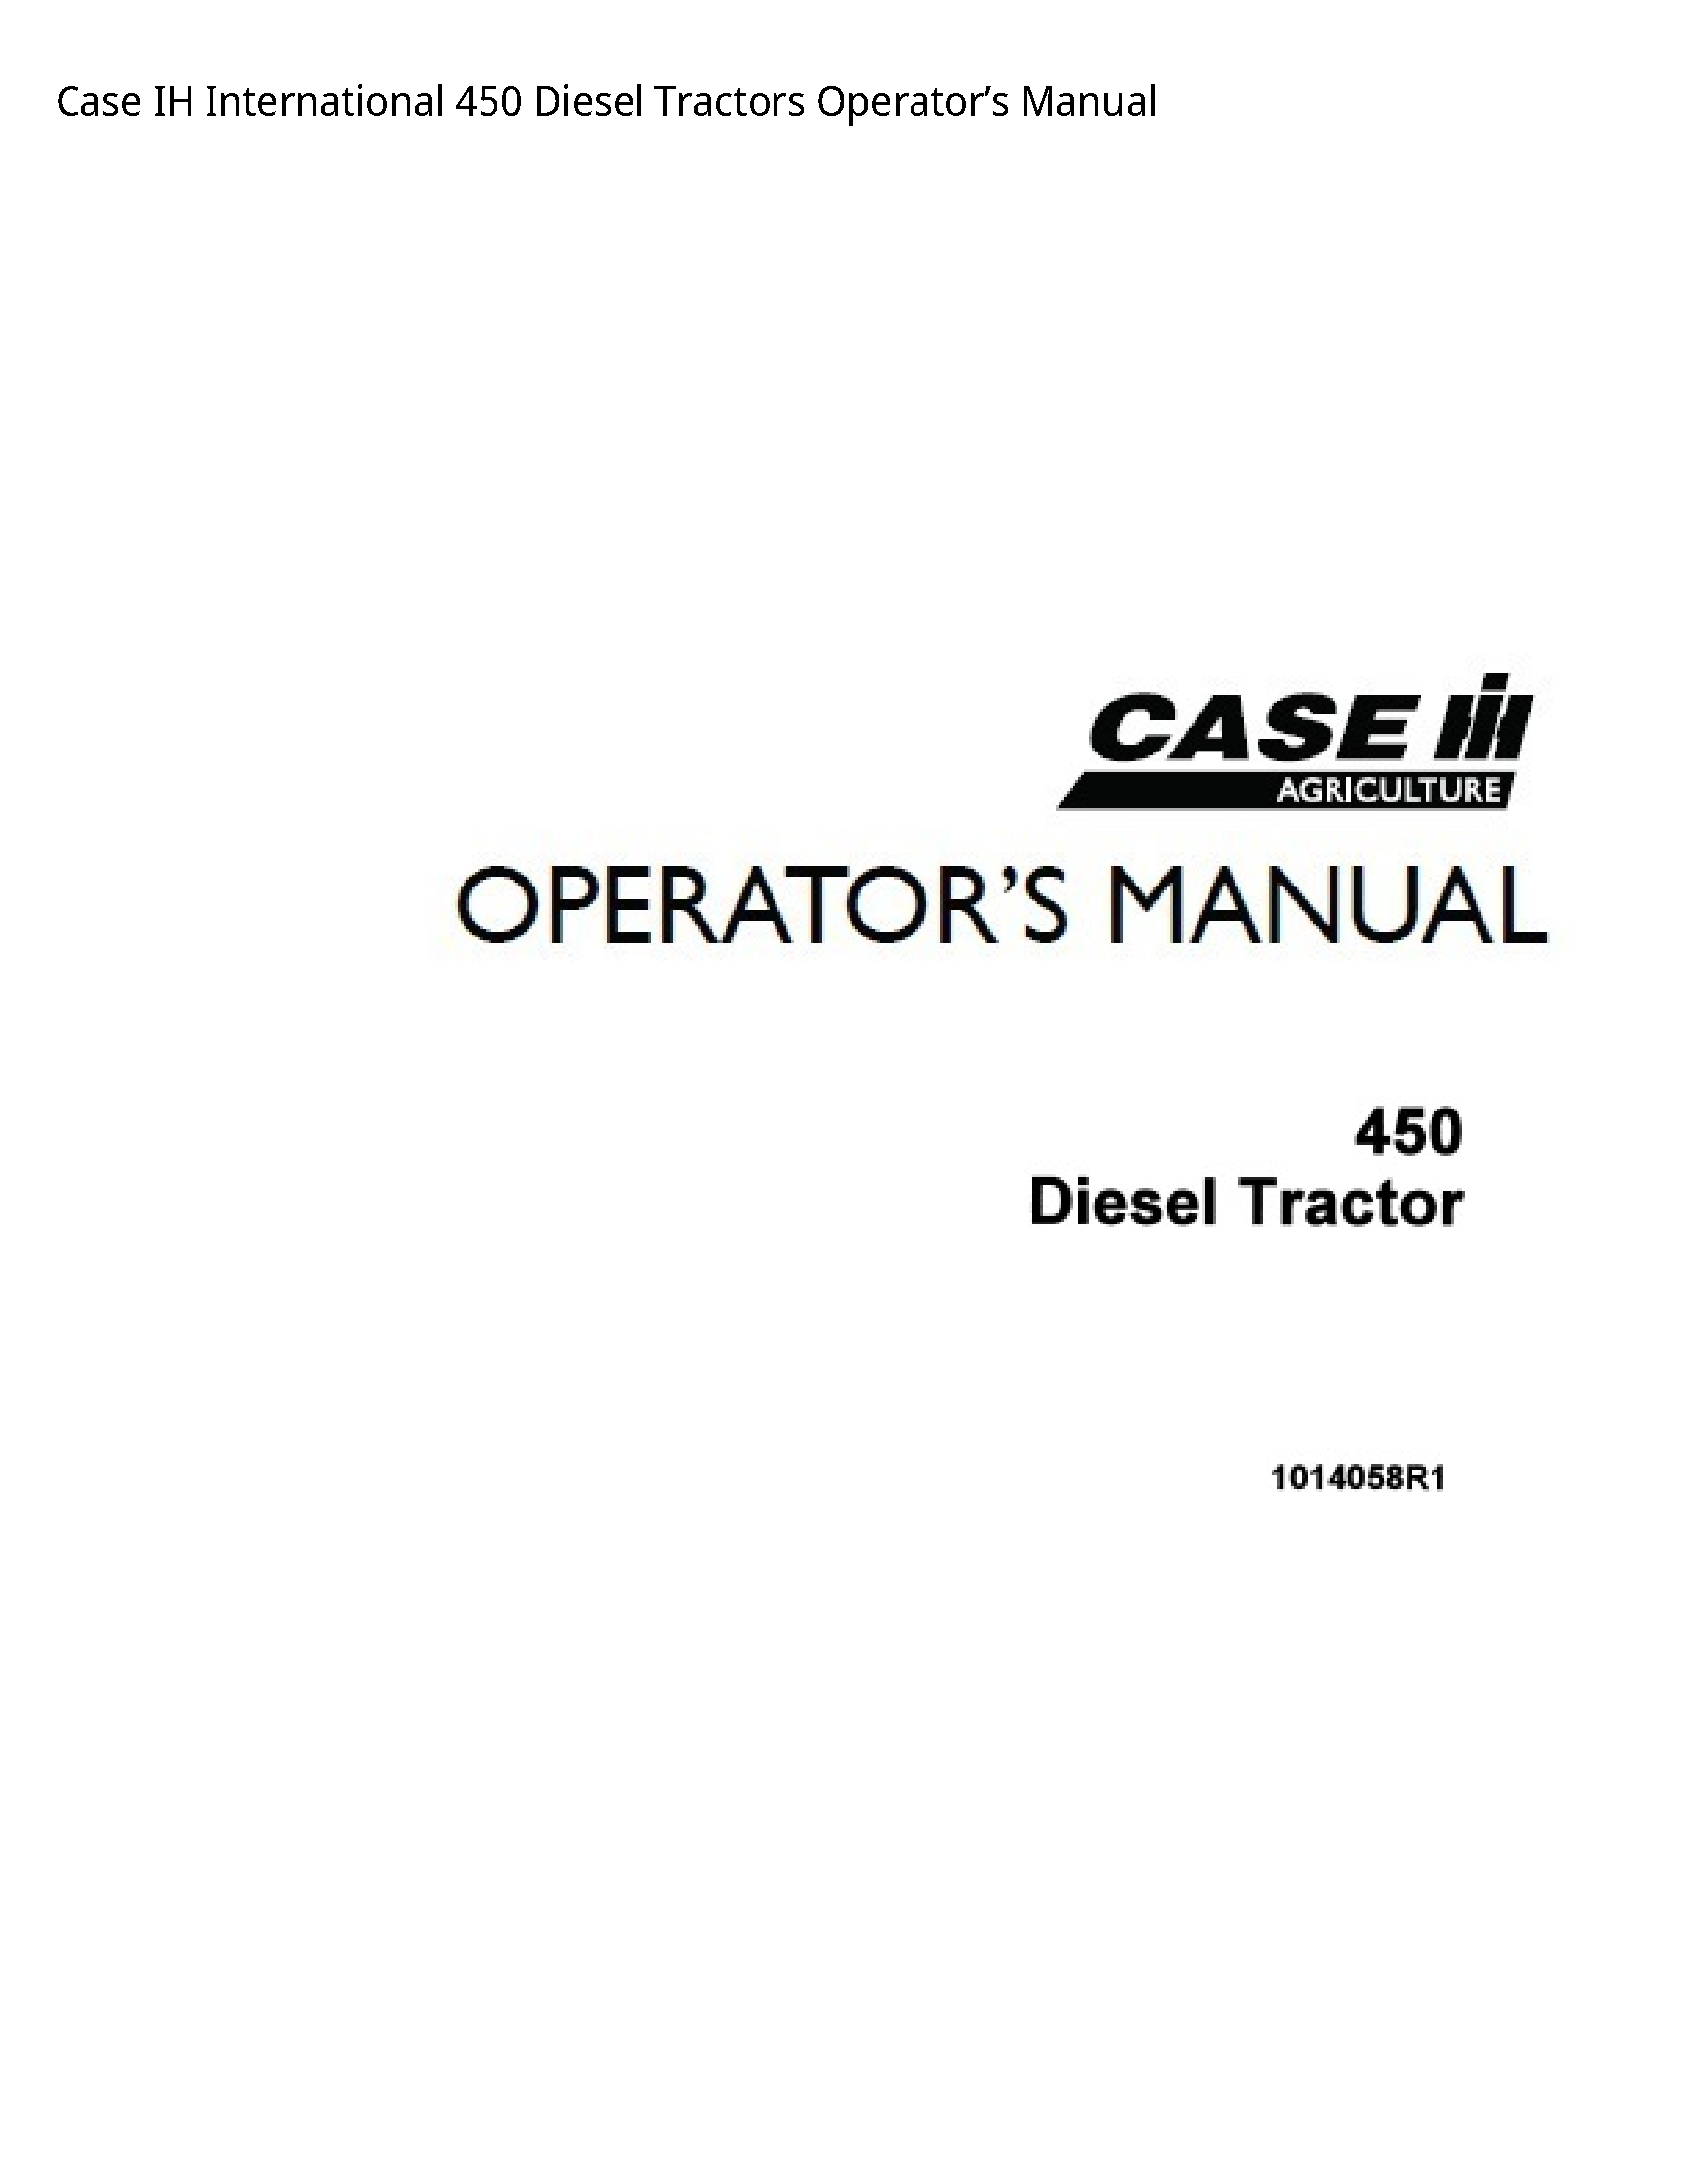 Case/Case IH 450 IH International Diesel Tractors Operator’s manual